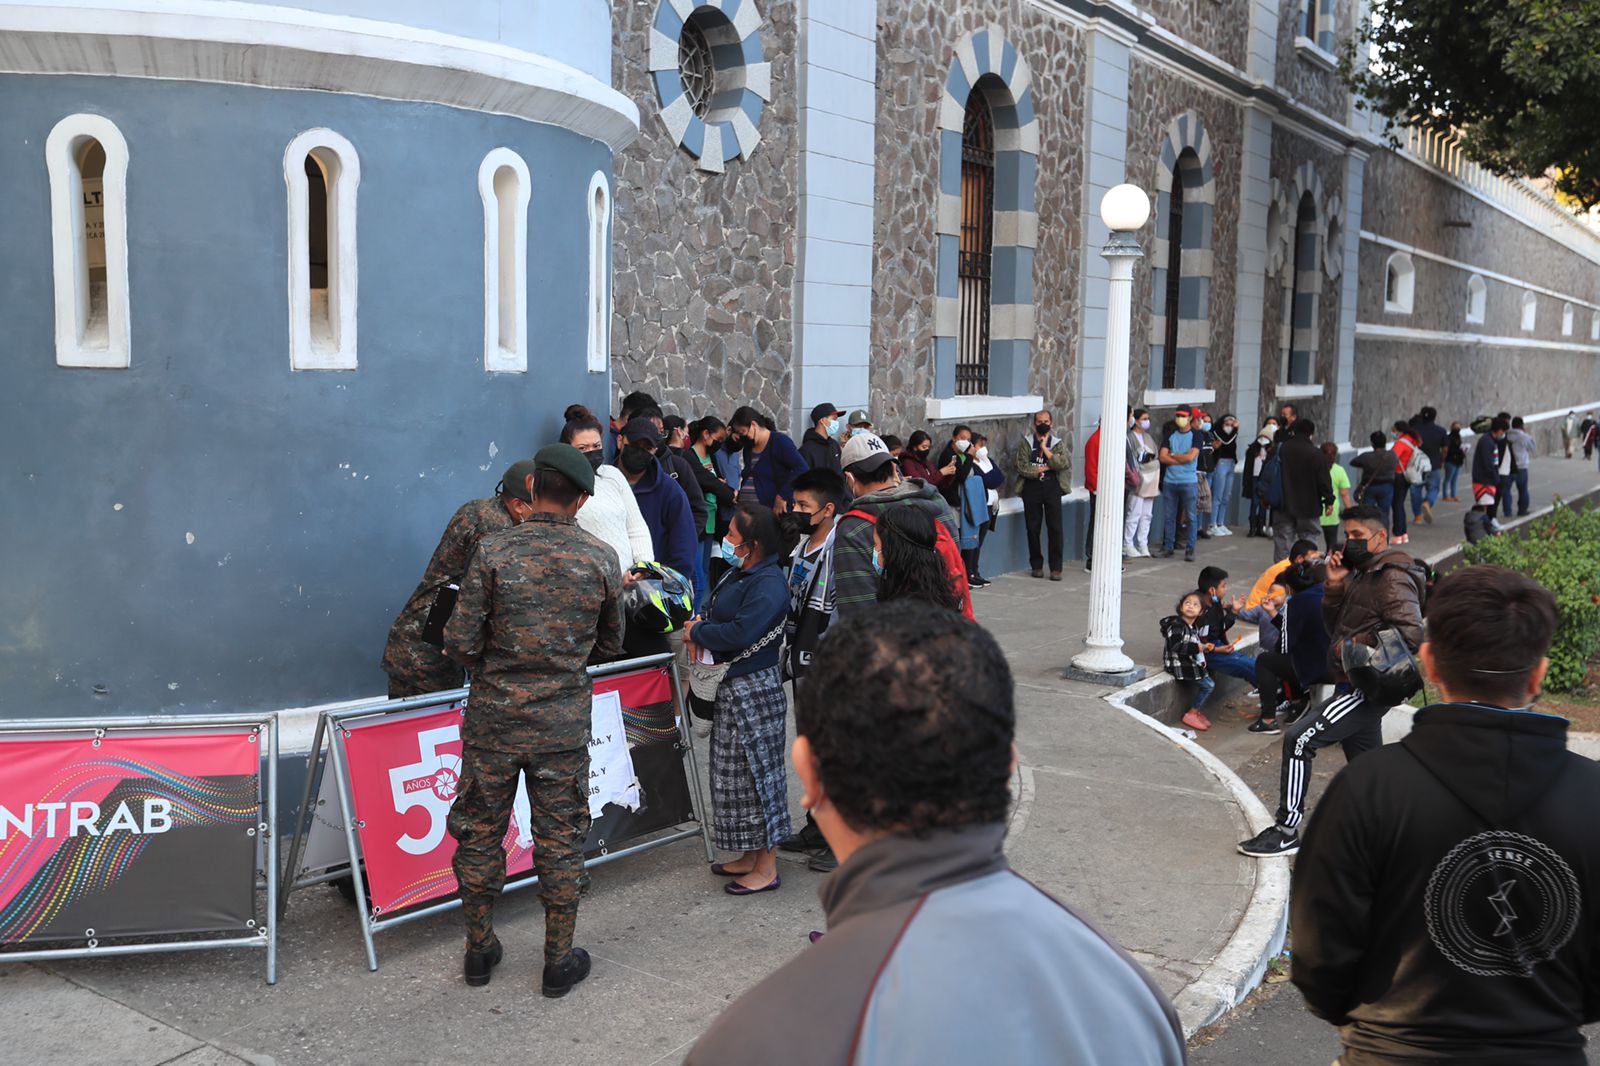 En el puesto de la Guardia de Honor se puede observar afluencia de personas. (Foto Prensa Libre: Élmer Vargas)